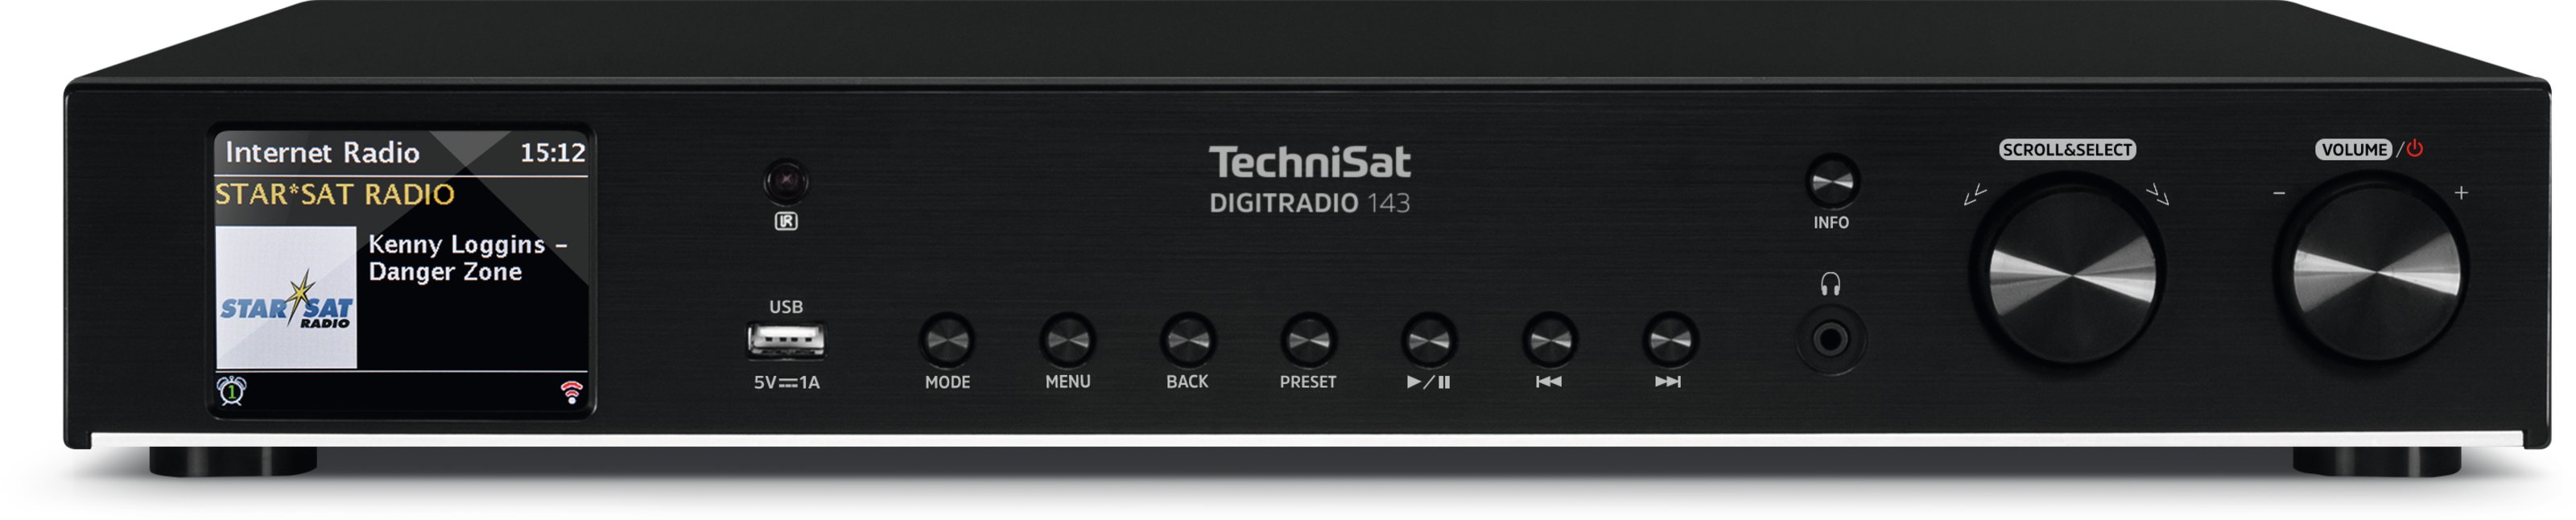 TechniSat DigitRadio 143 CD   Tuner FM , DAB+, streaming , internetowe , WiFi, LAN, odtwarzacz CD,wejście USB odtwarza pliki muzyczne